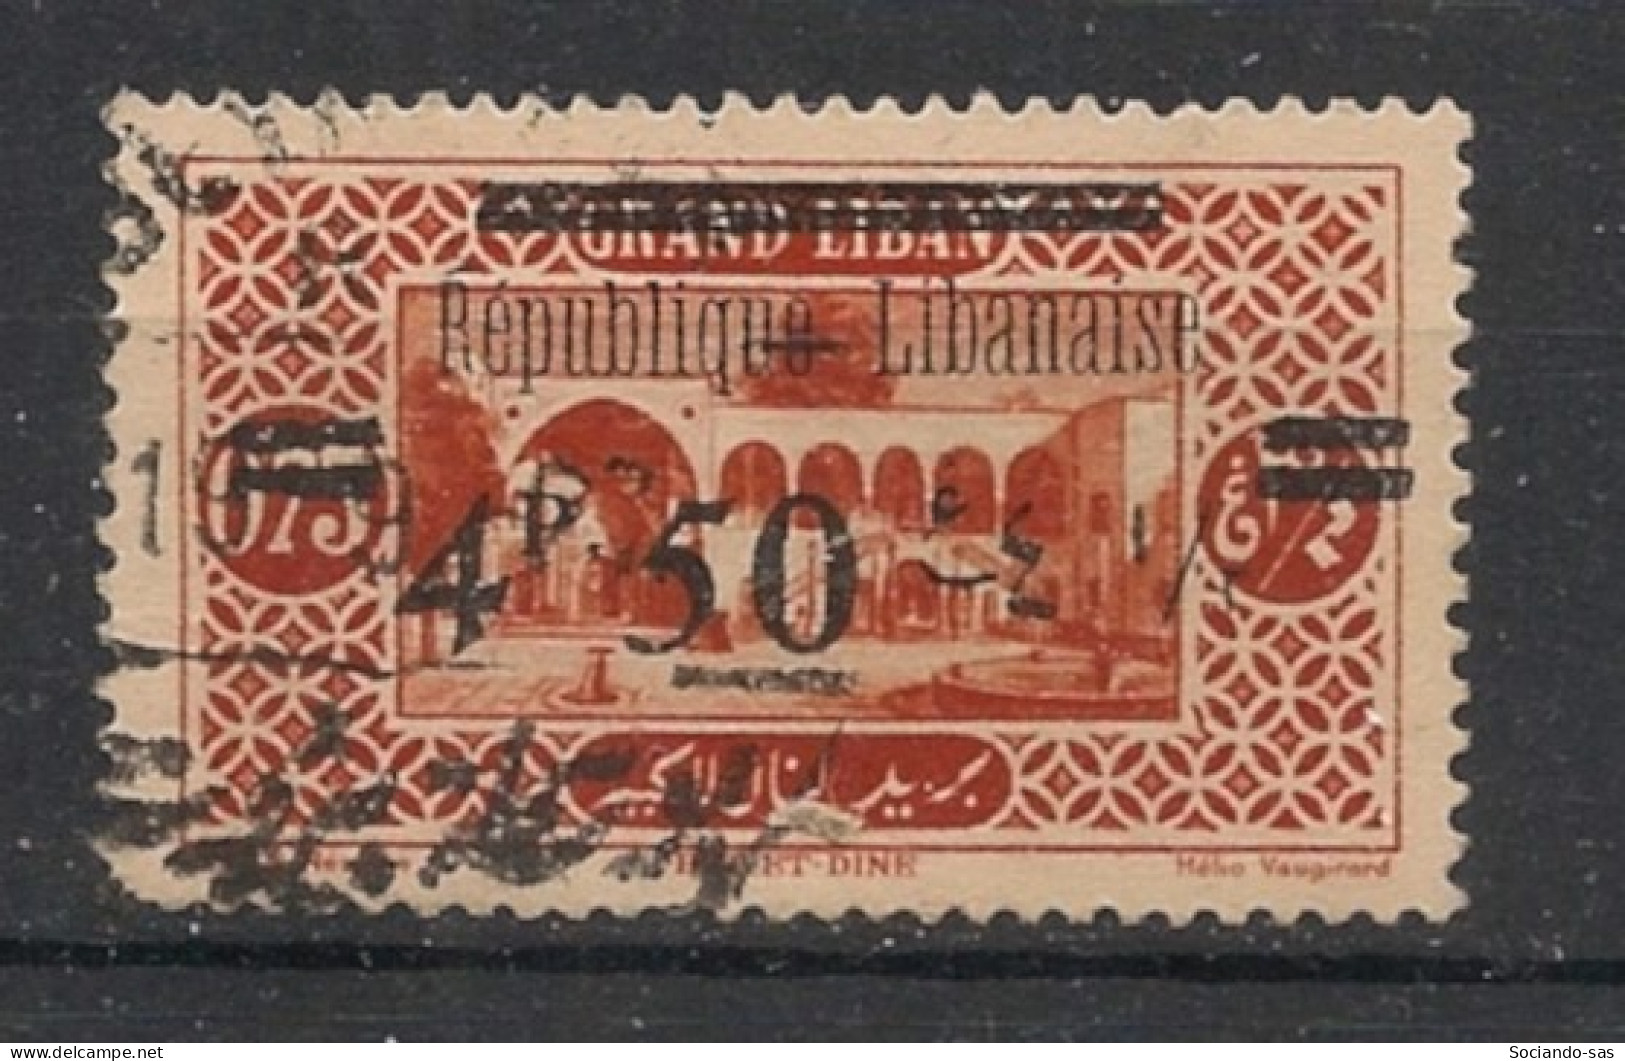 GRAND LIBAN - 1927 - N°YT. 91 - Bet Et Dine 4pi50 Sur 0pi75 - Oblitéré / Used - Oblitérés